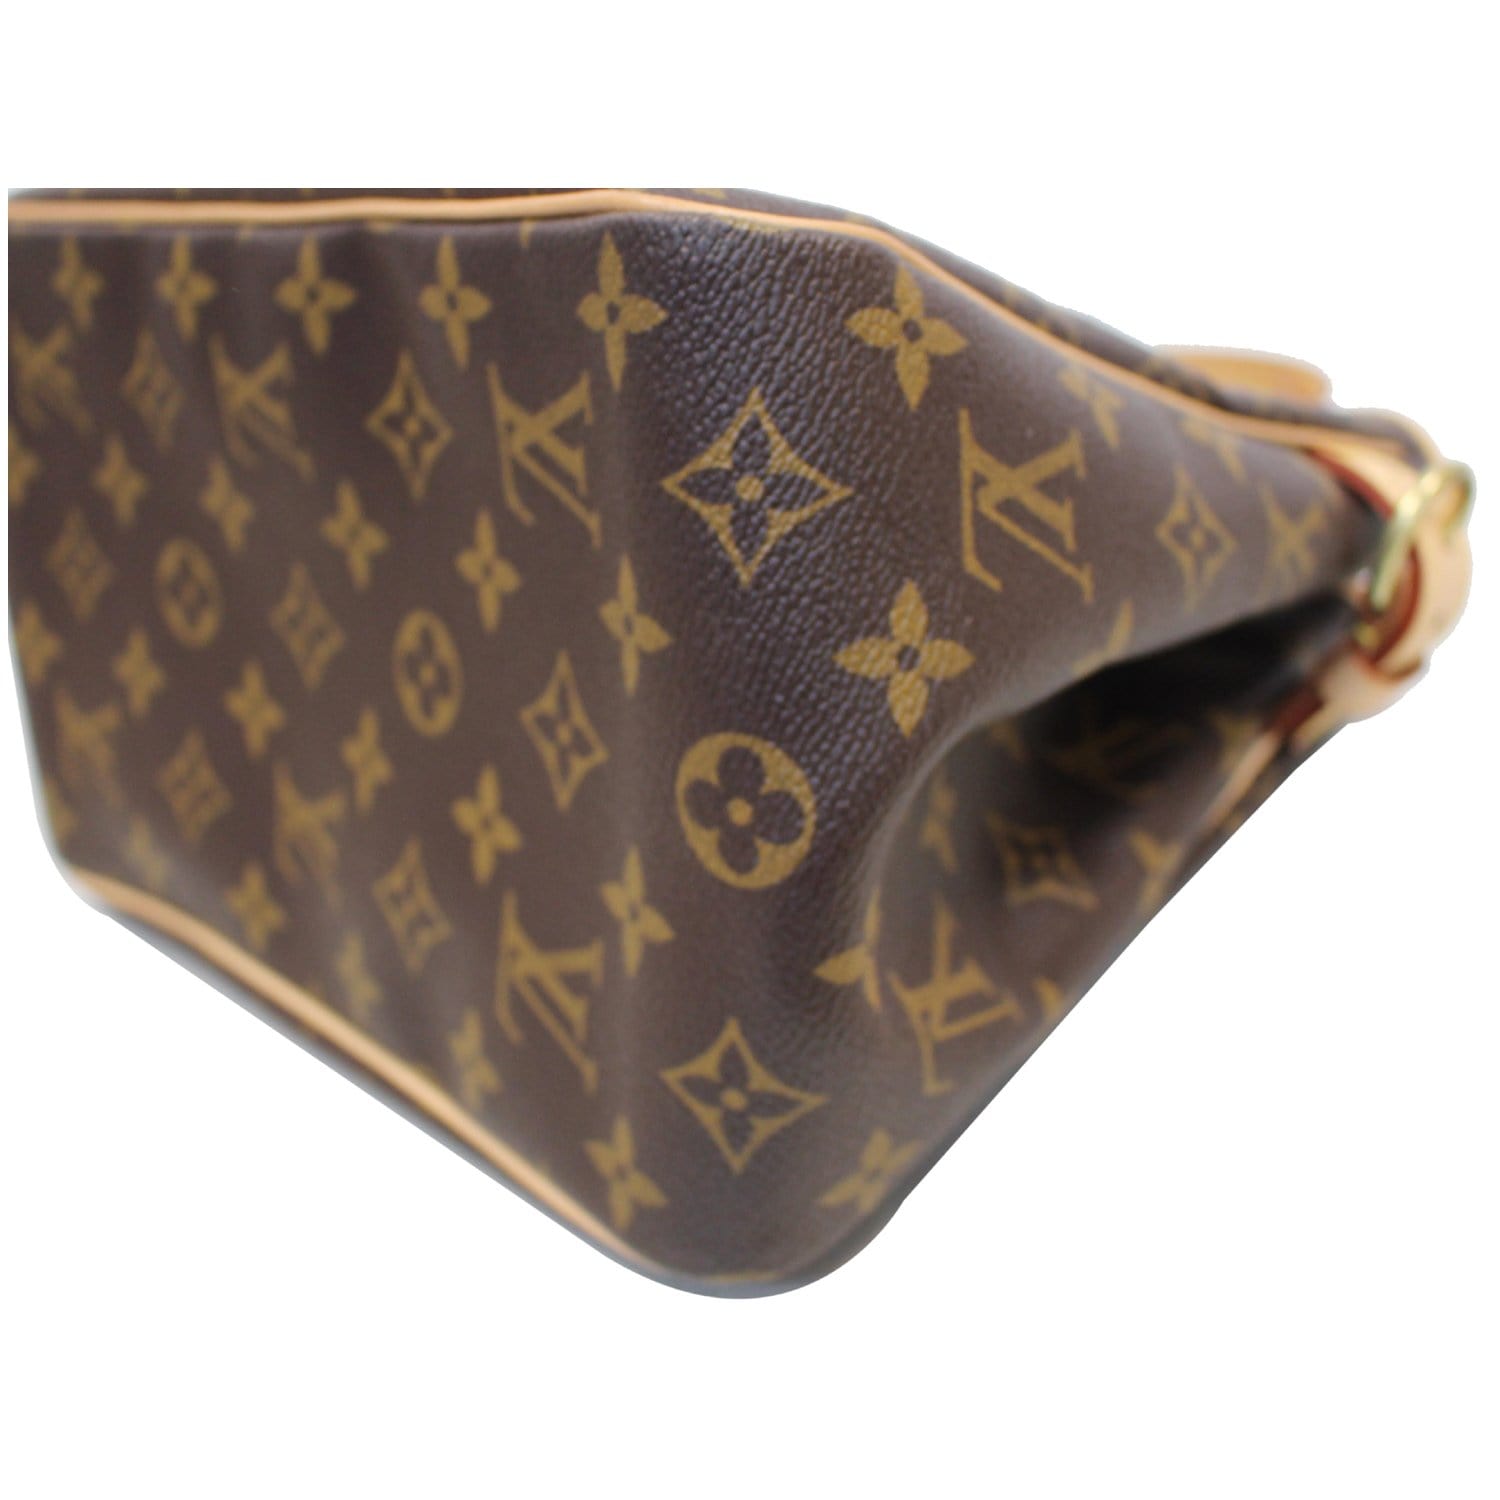 Buy Pre-Owned Authentic Luxury Louis Vuitton Batignolles Vertical Pm  Handbag Online